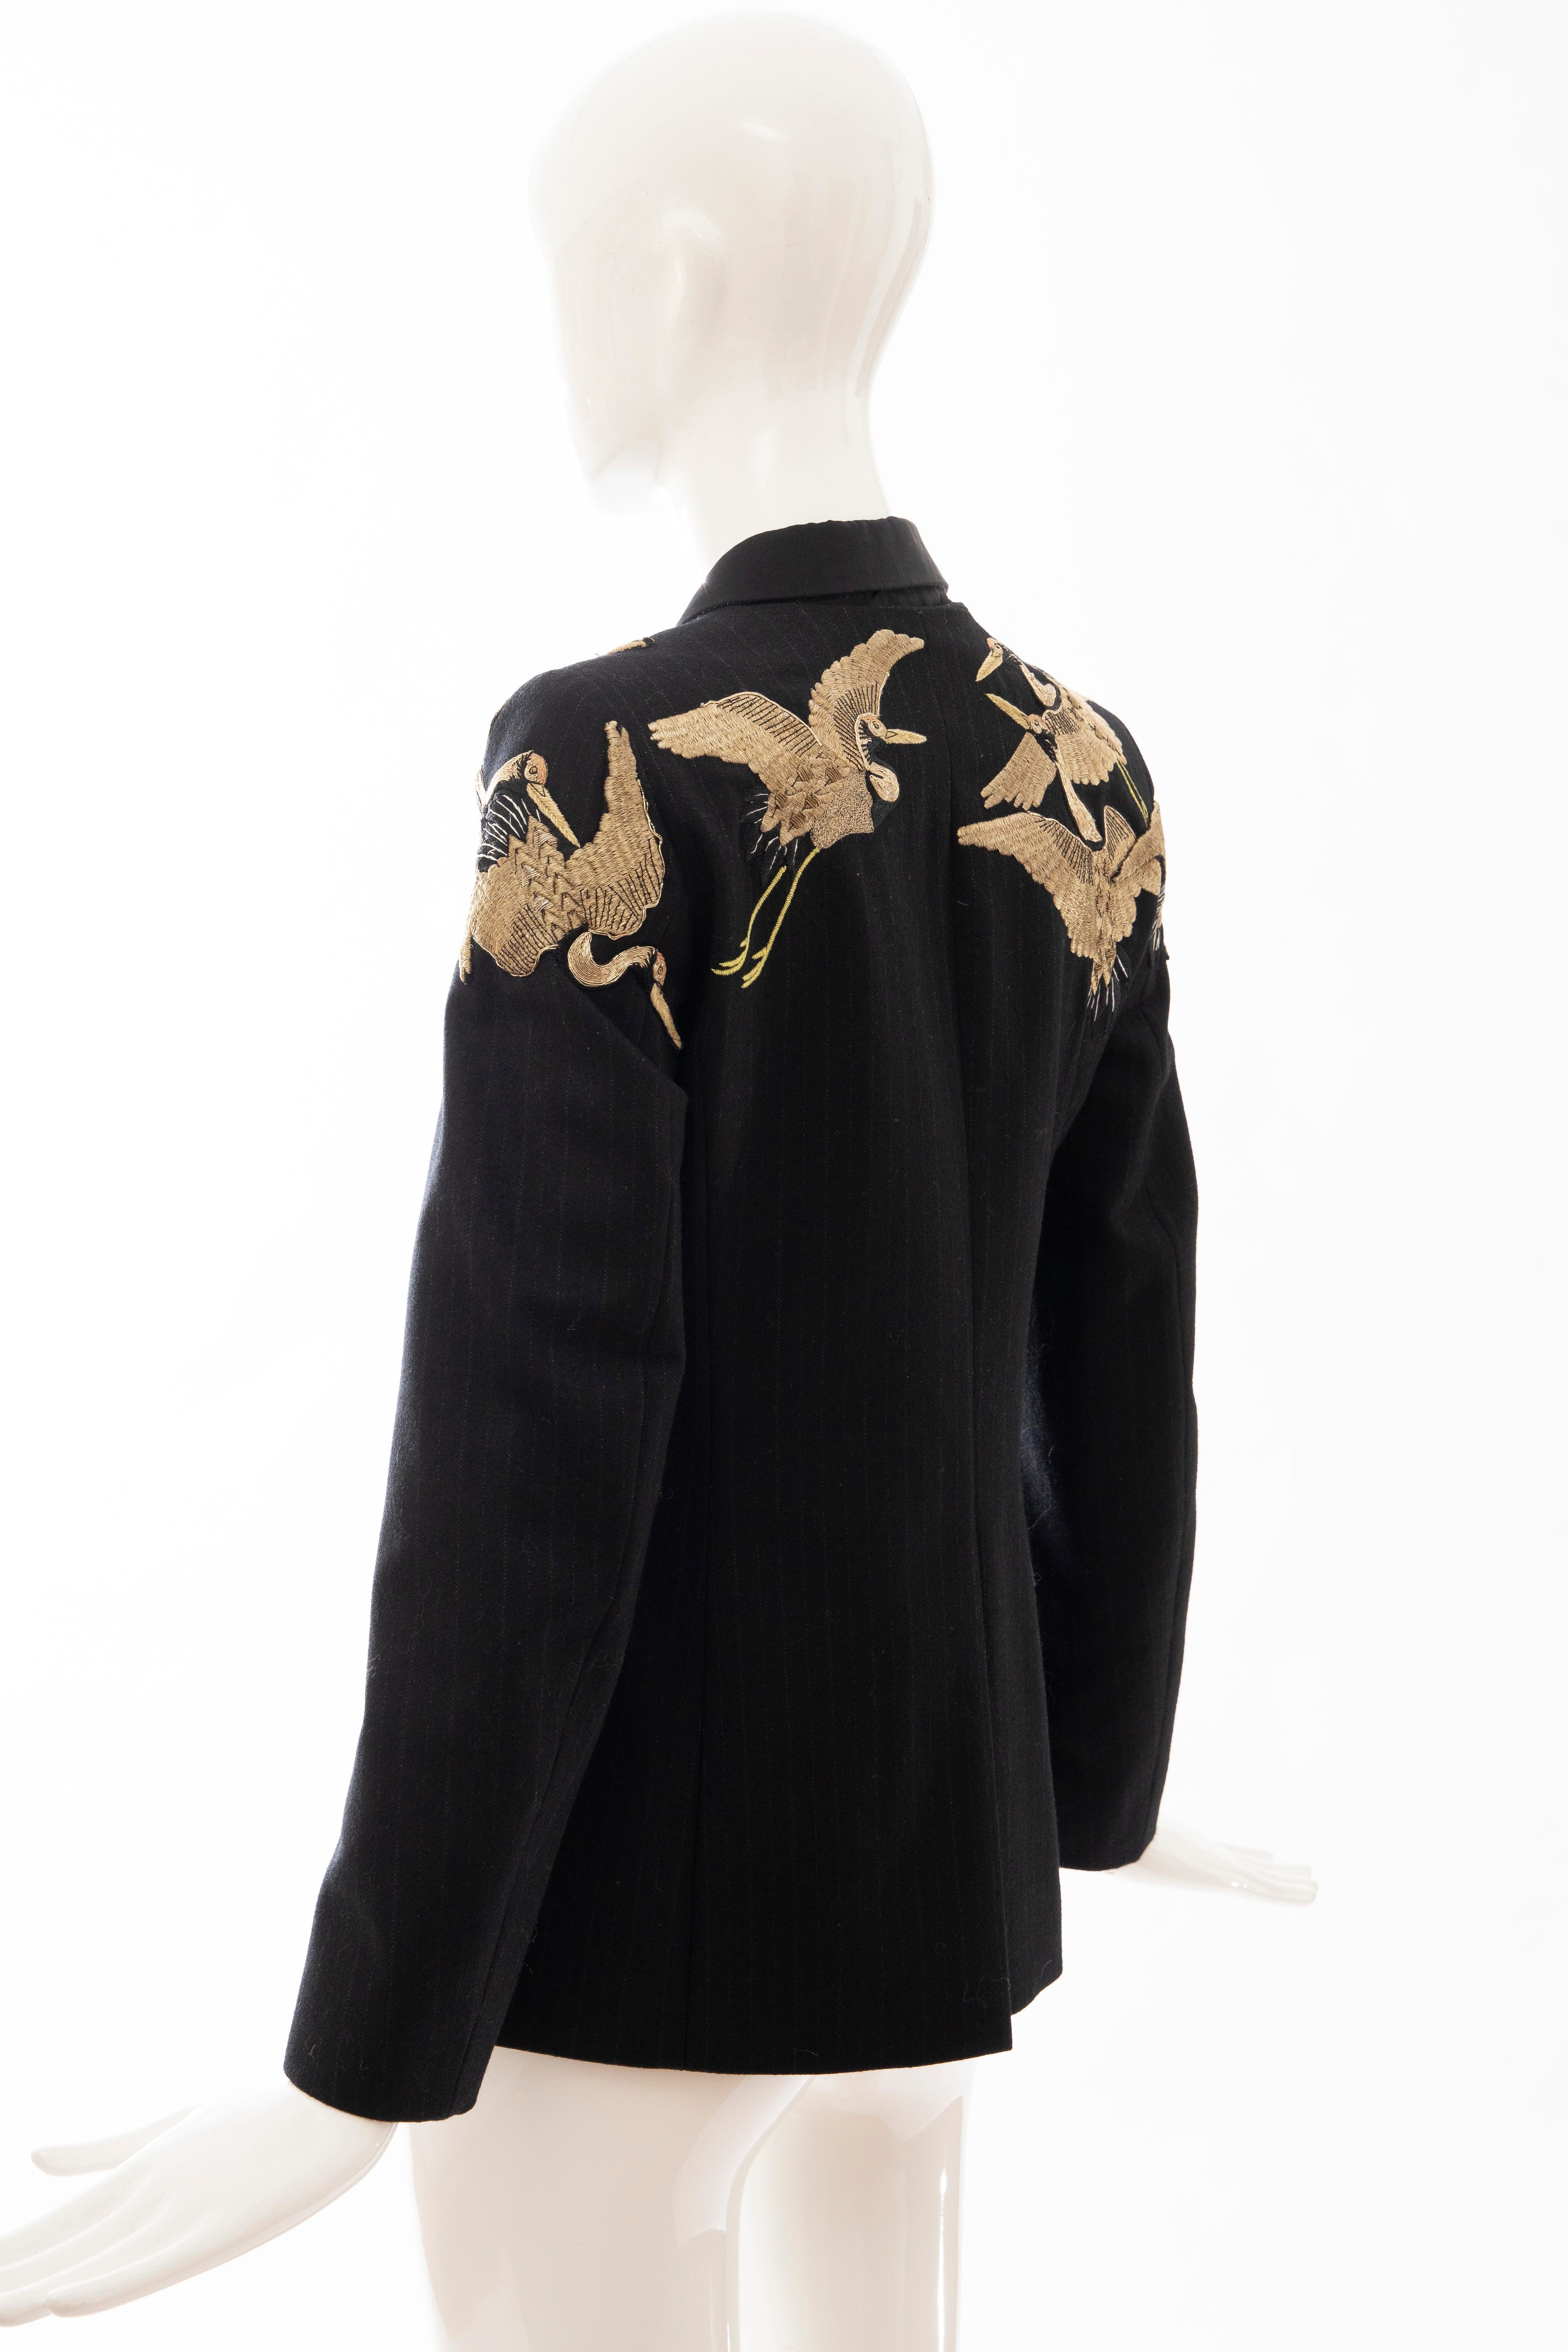 Dries van Noten Runway Black Wool Pinstripe Embroidered Jacket, Fall 2012 3